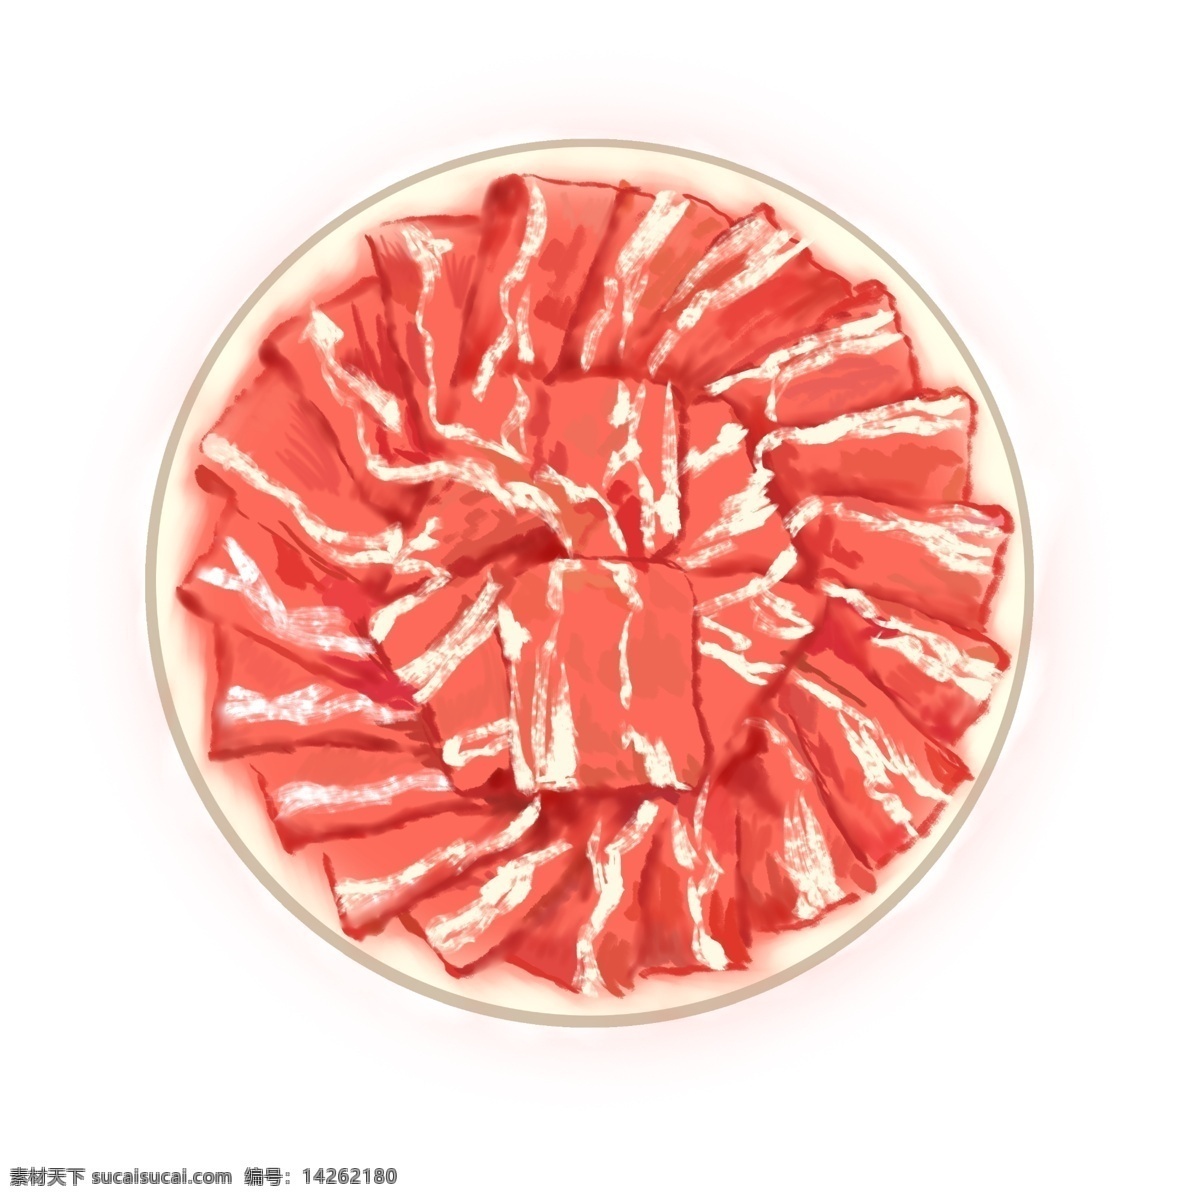 冬季 食物 羊肉 手绘 冬季食物 肉类 肥瘦相间 花白 摆盘 肉食 肉 荤素 荤菜 羊肉卷 火锅羊肉卷 矢量图